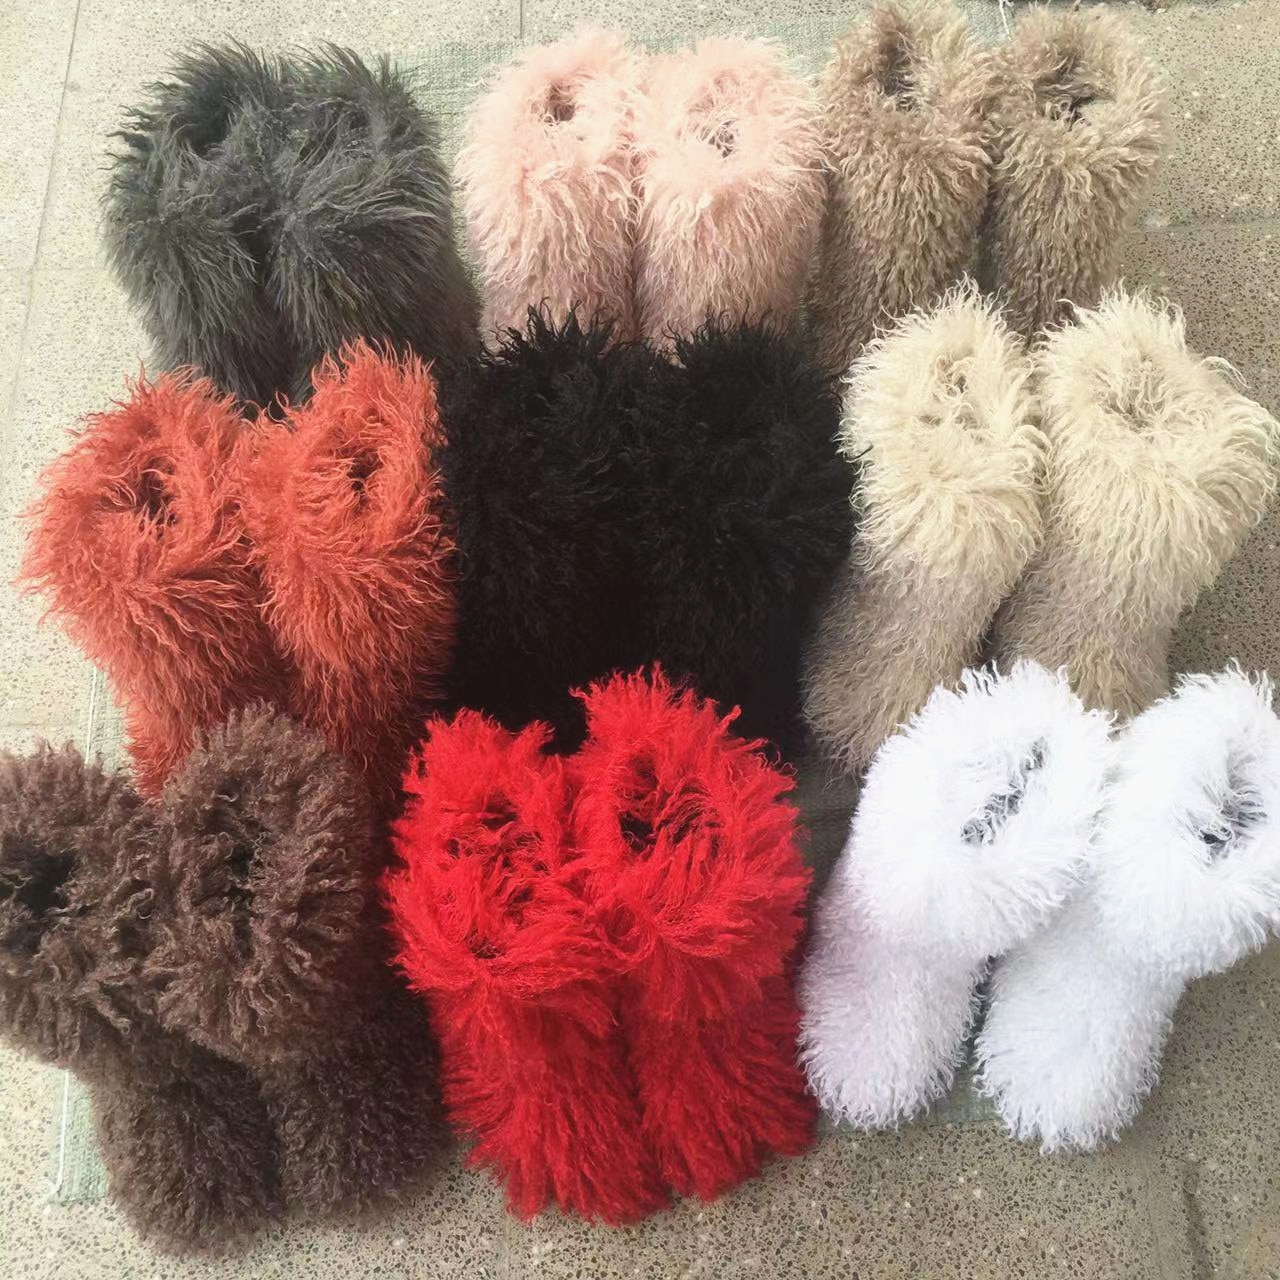 Winter Women Designer Knee High Warm Shoes Lamb Skin Long Hair Faux Mongolian Sheep Fur Boots